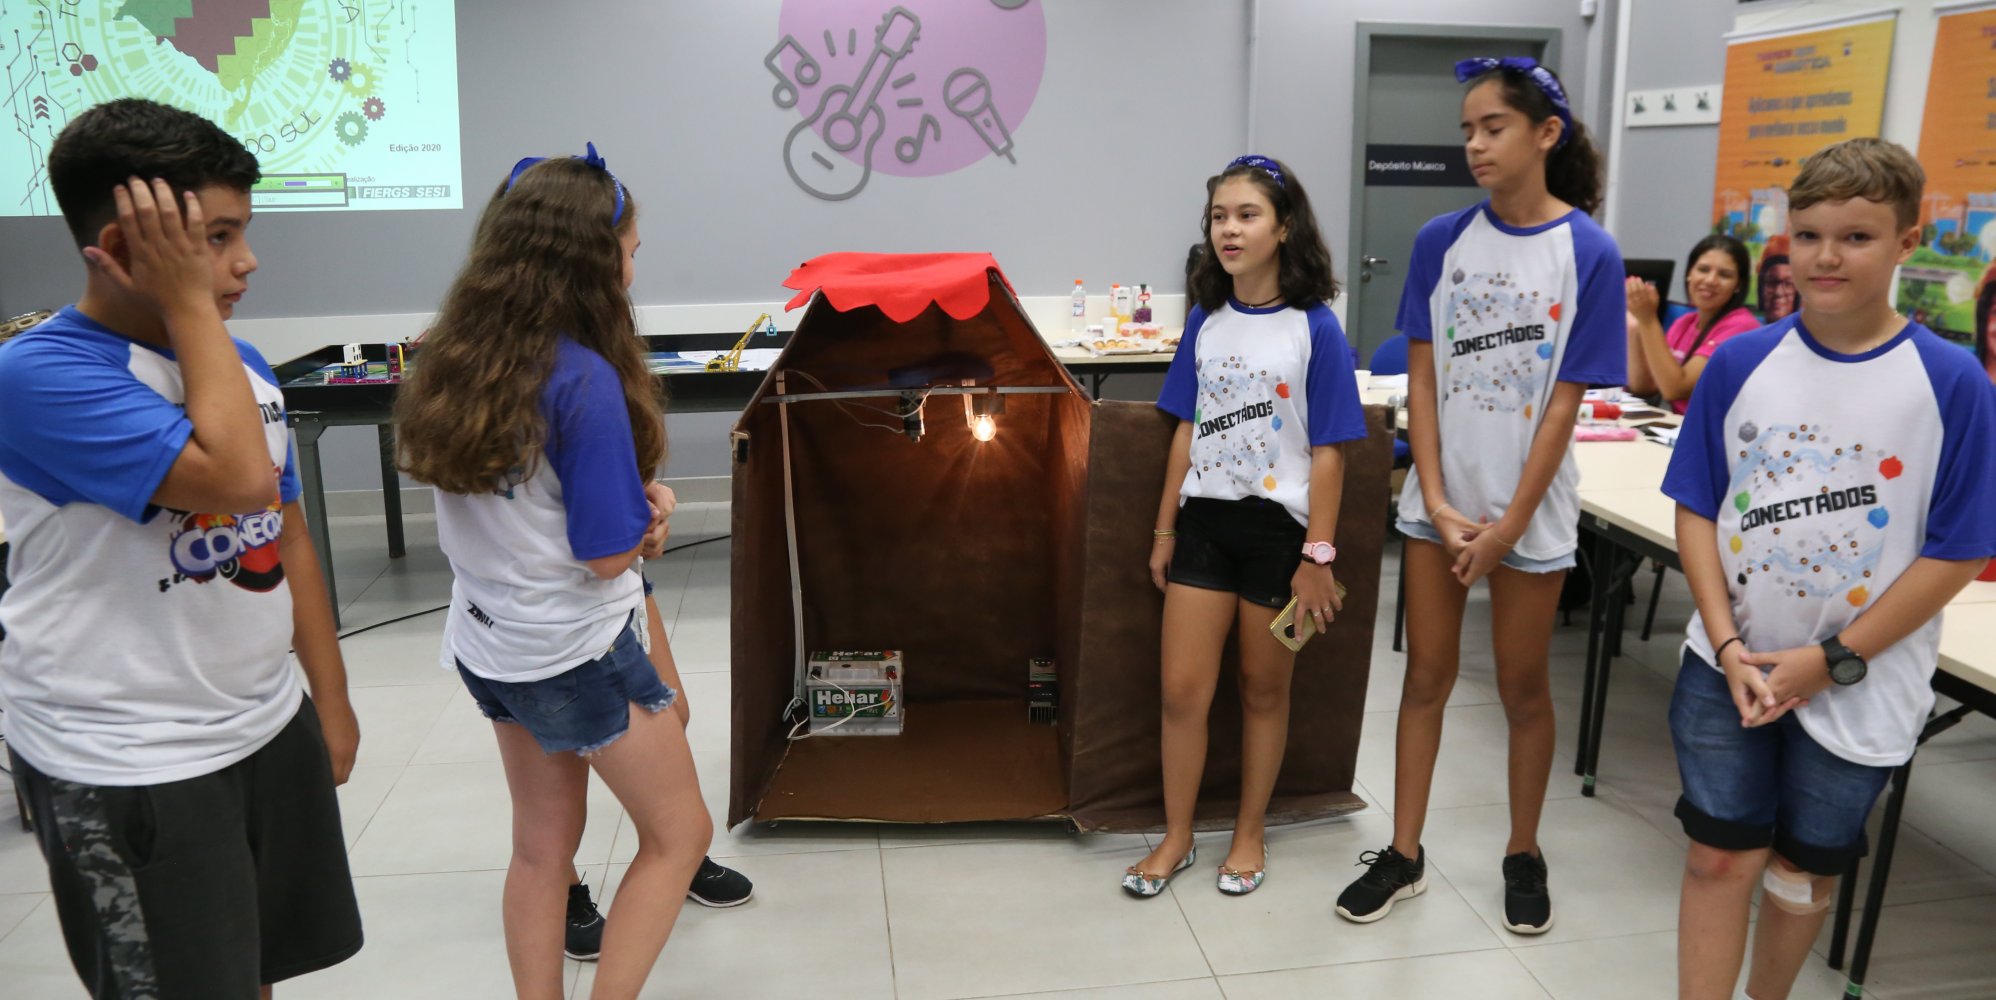 Amistoso de robótica na Escola Sesi de Gravataí